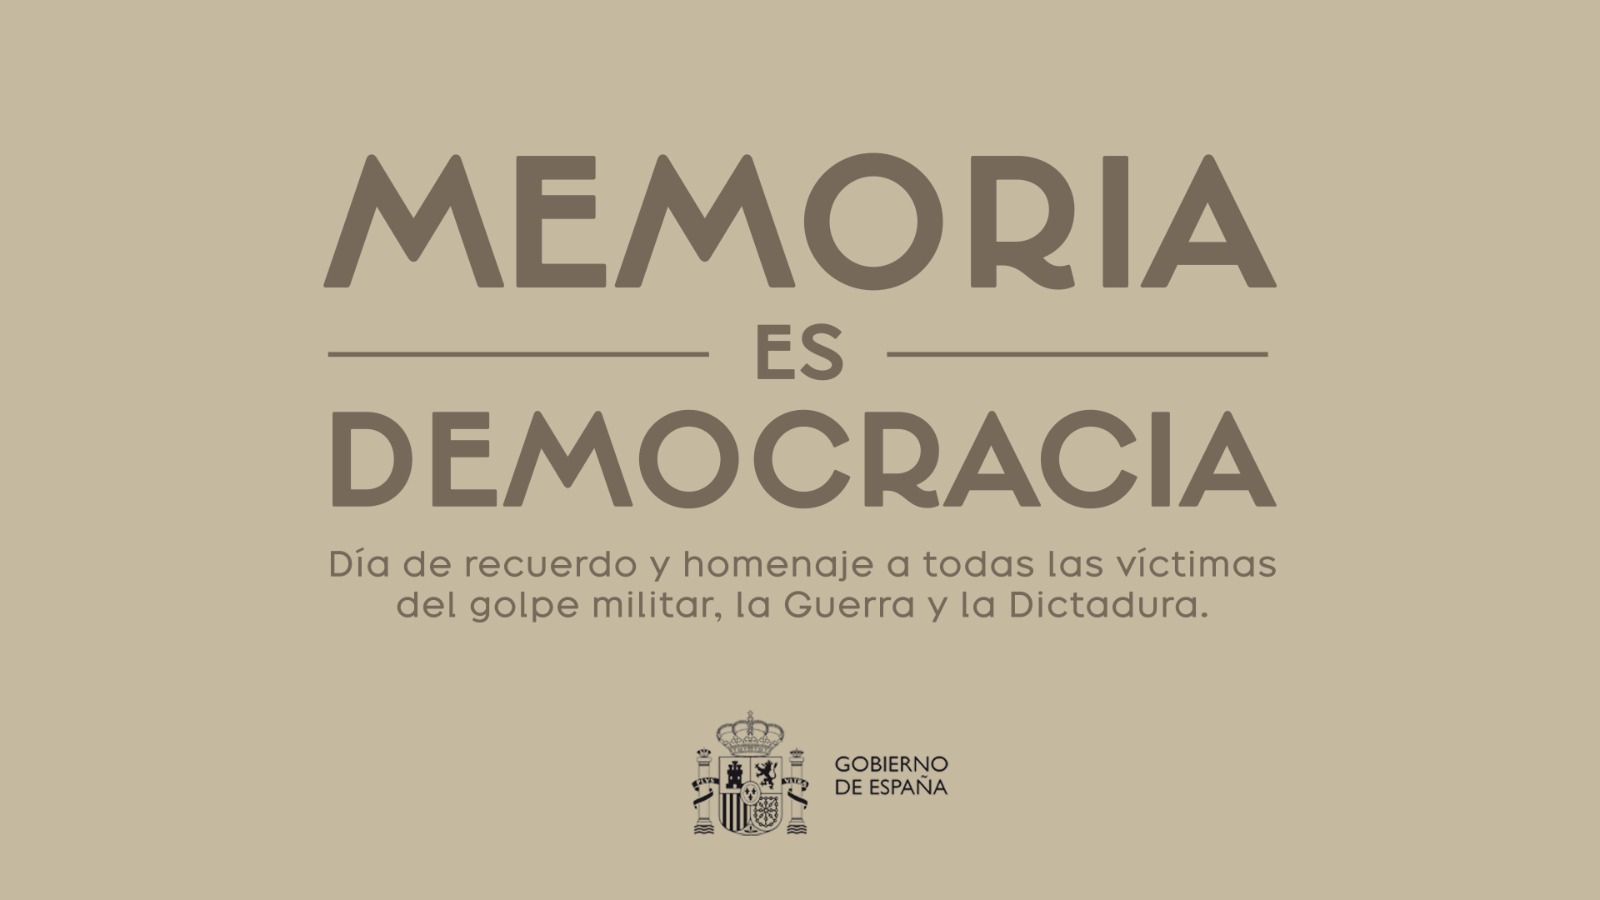 31 de octubre, Dia de record i homenatge a totes les víctimes del cop militar, la Guerra Civil i la dictadura